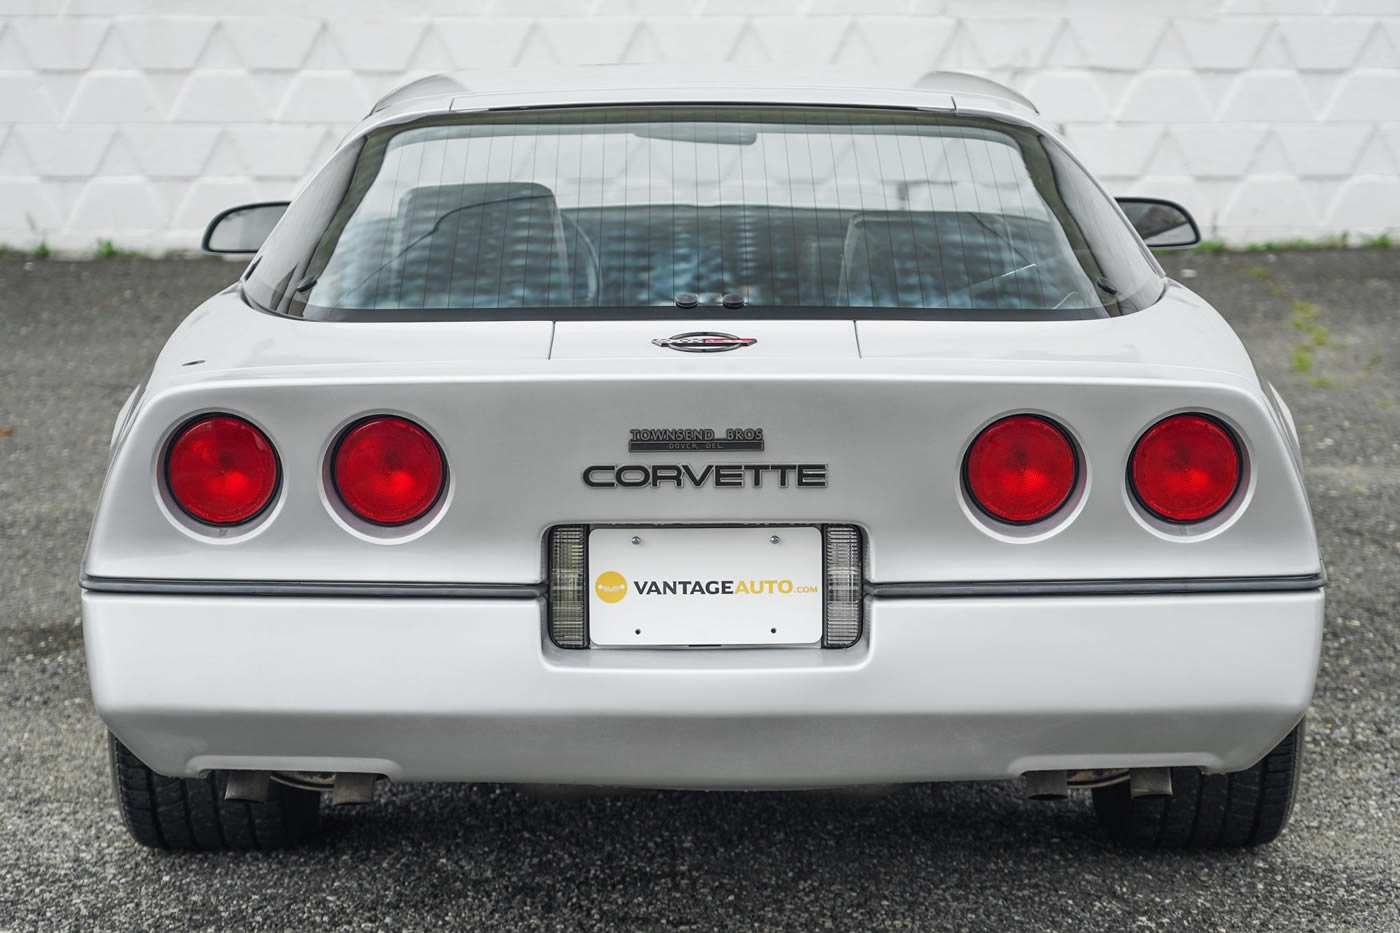 1984 Corvette in Silver Metallic